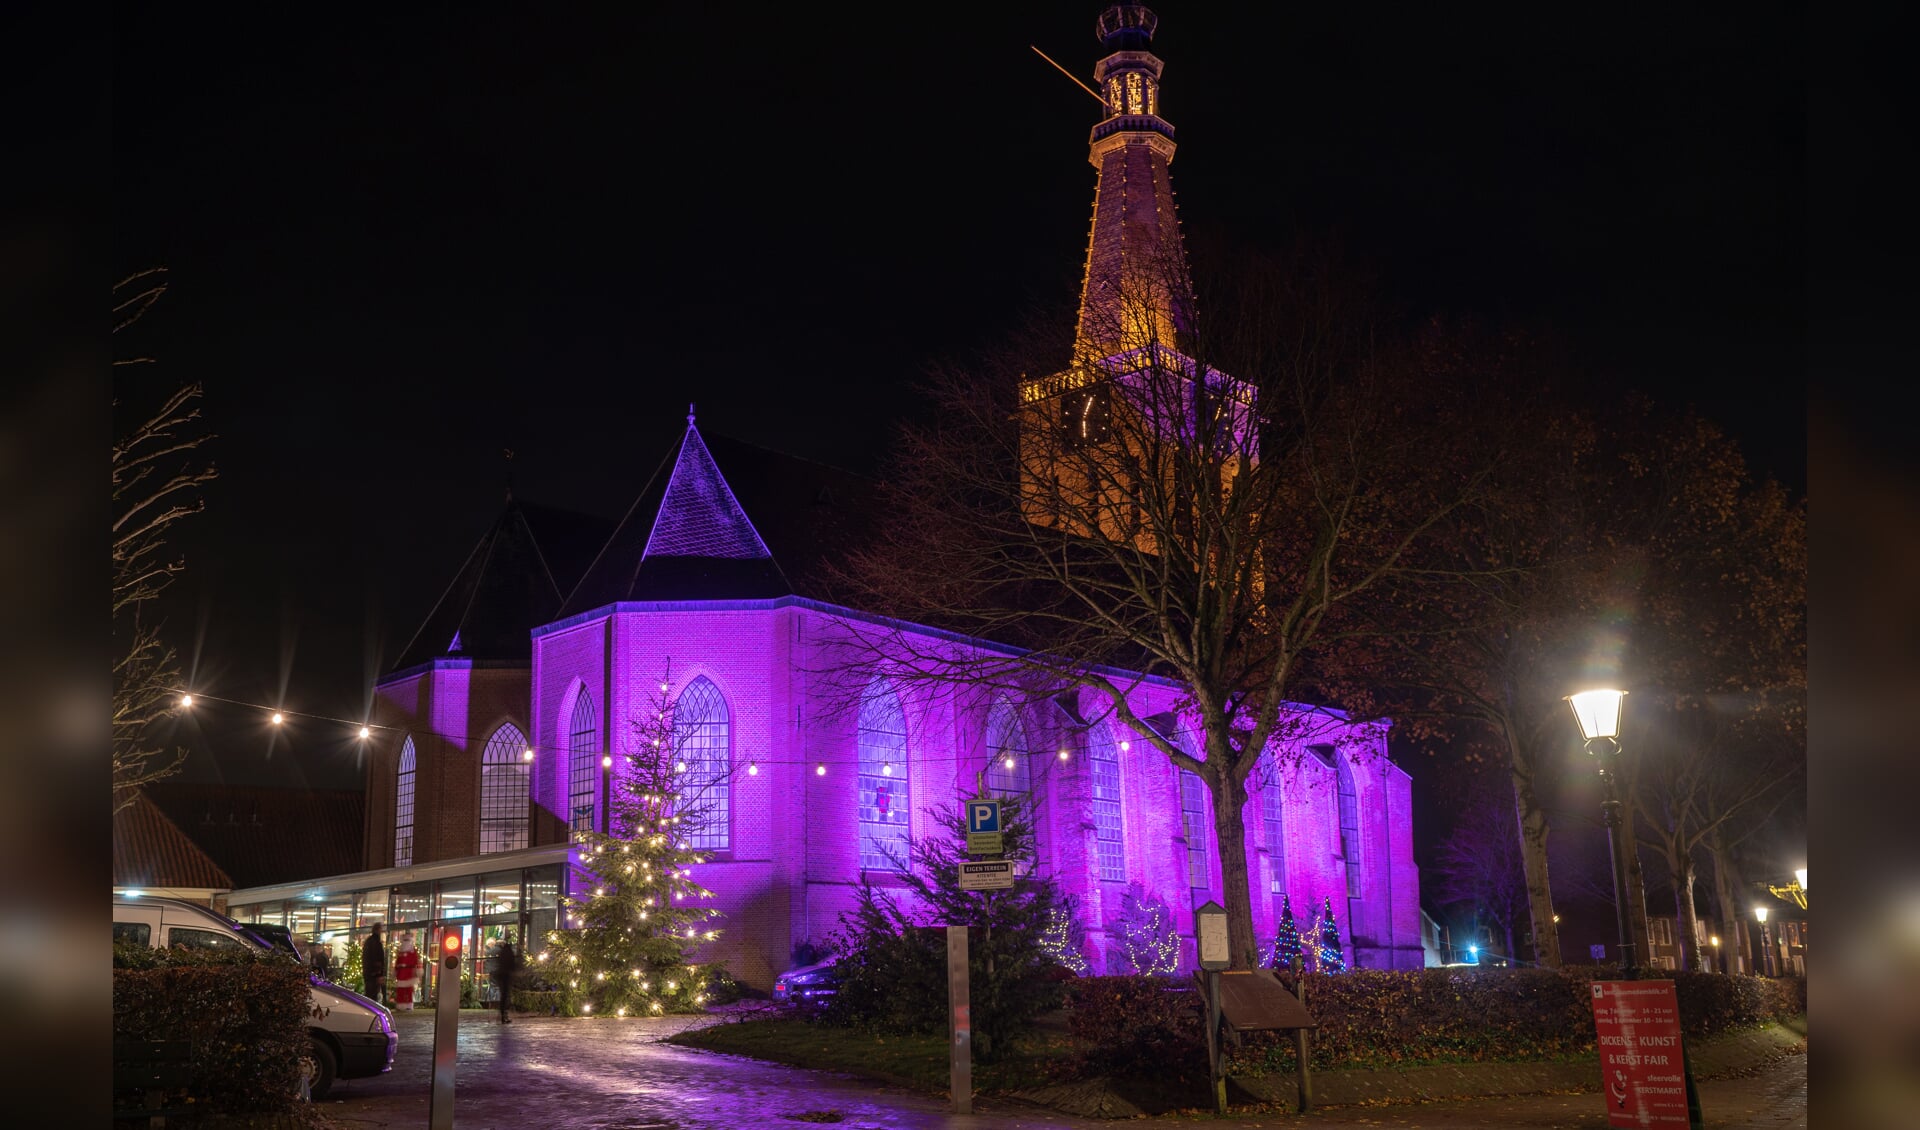 De prachtig verlichte Bonifaciuskerk in Medemblik, door Pieter Ratten. (Foto: Pascal van As)